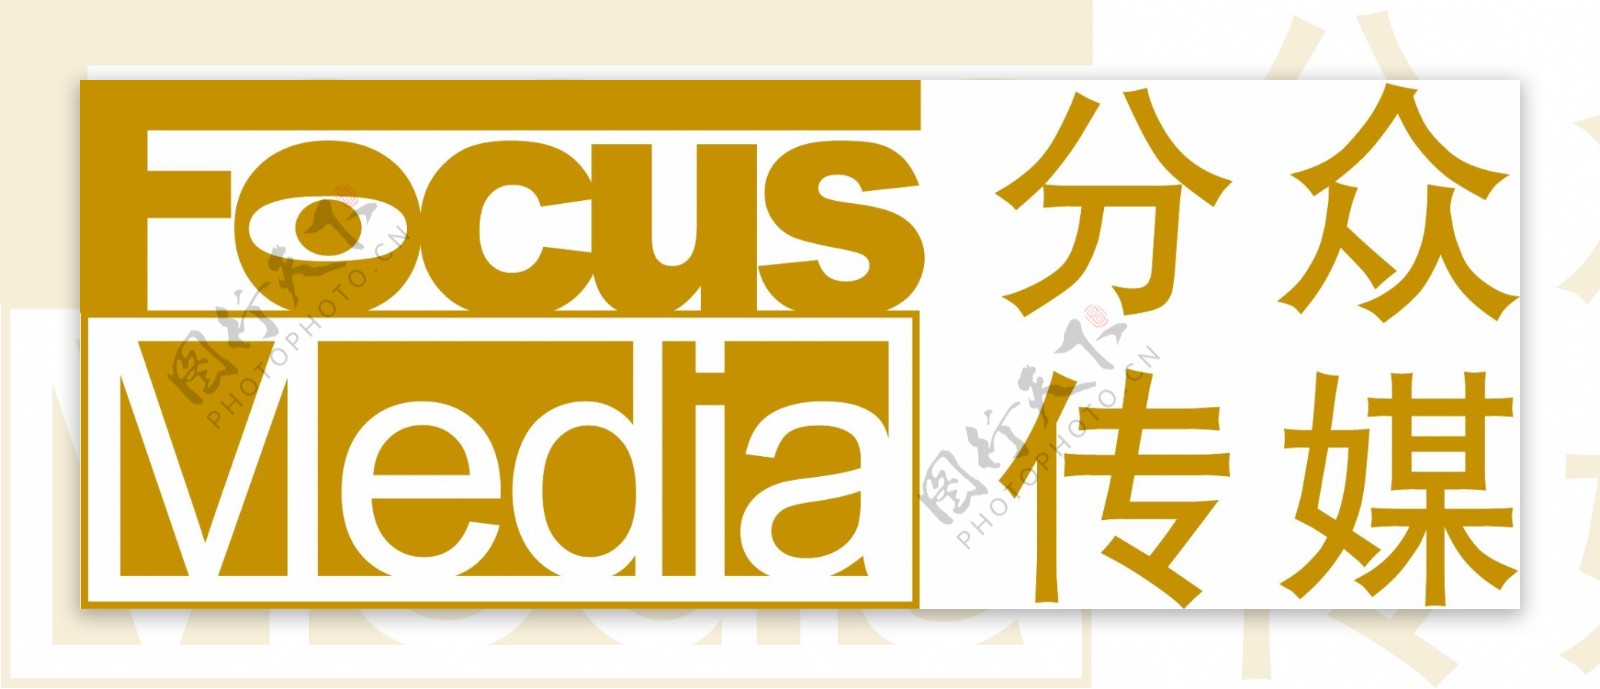 分众传媒logo图片